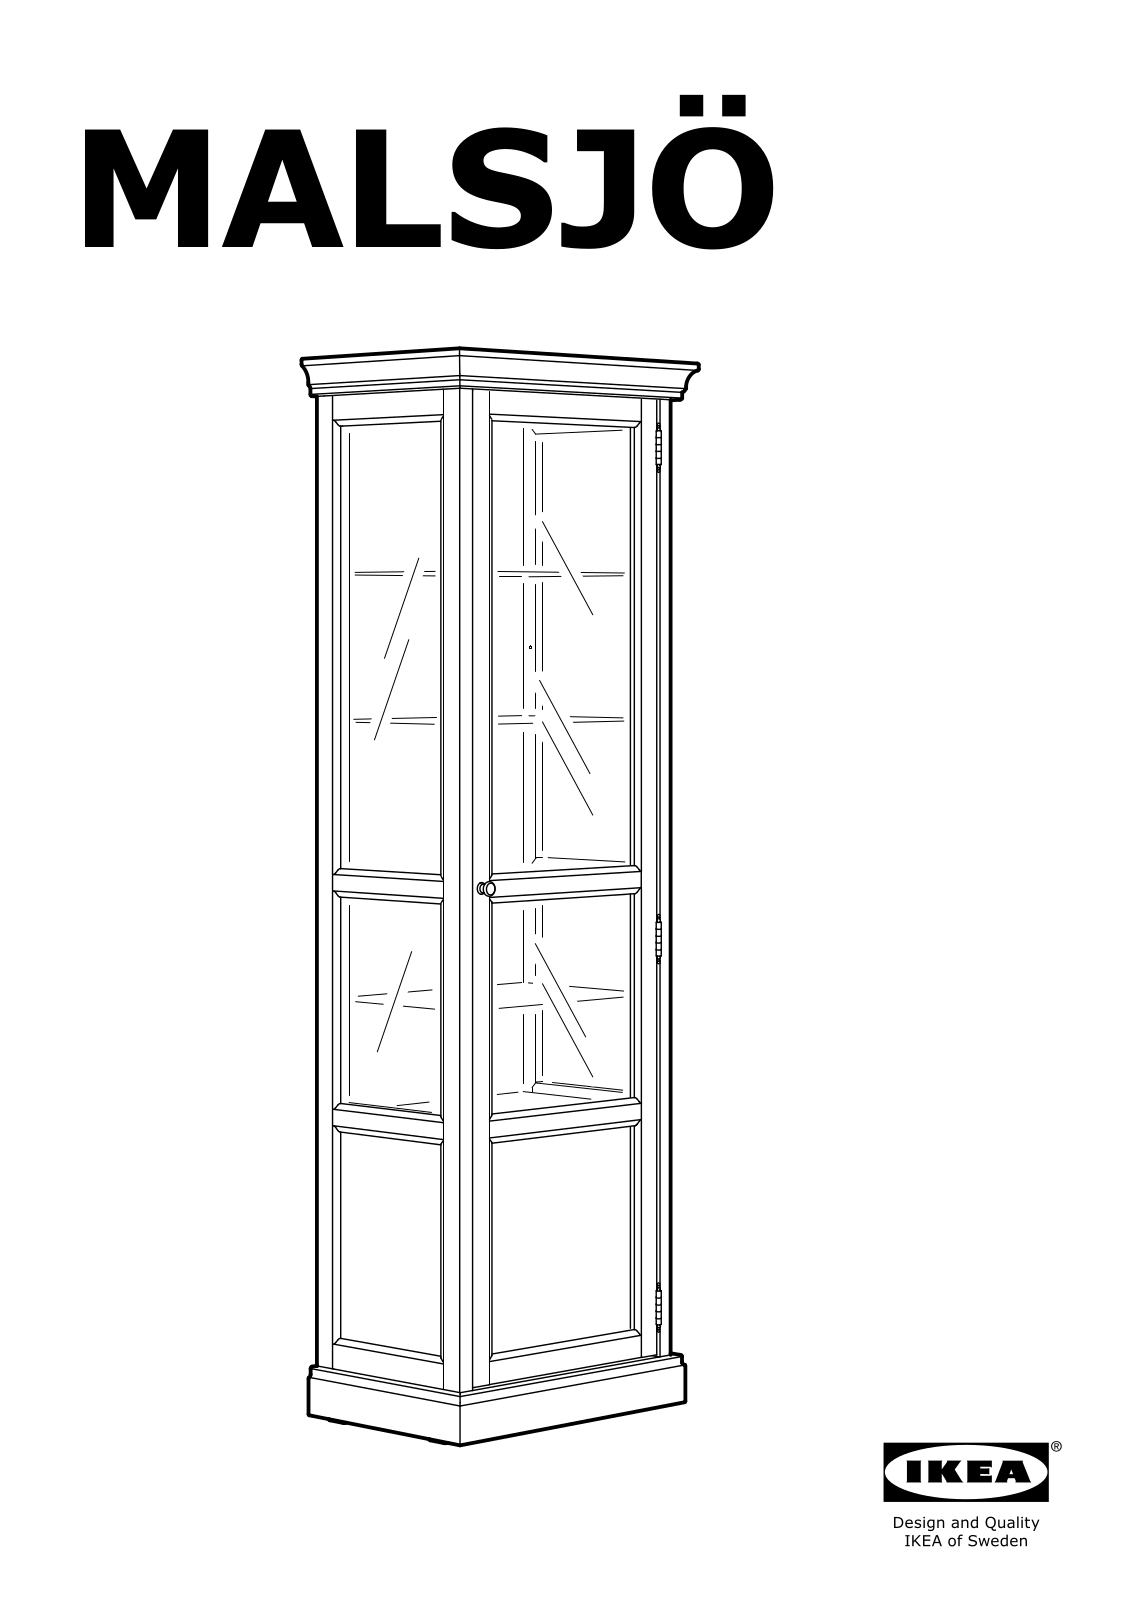 IKEA MALSJO User Manual